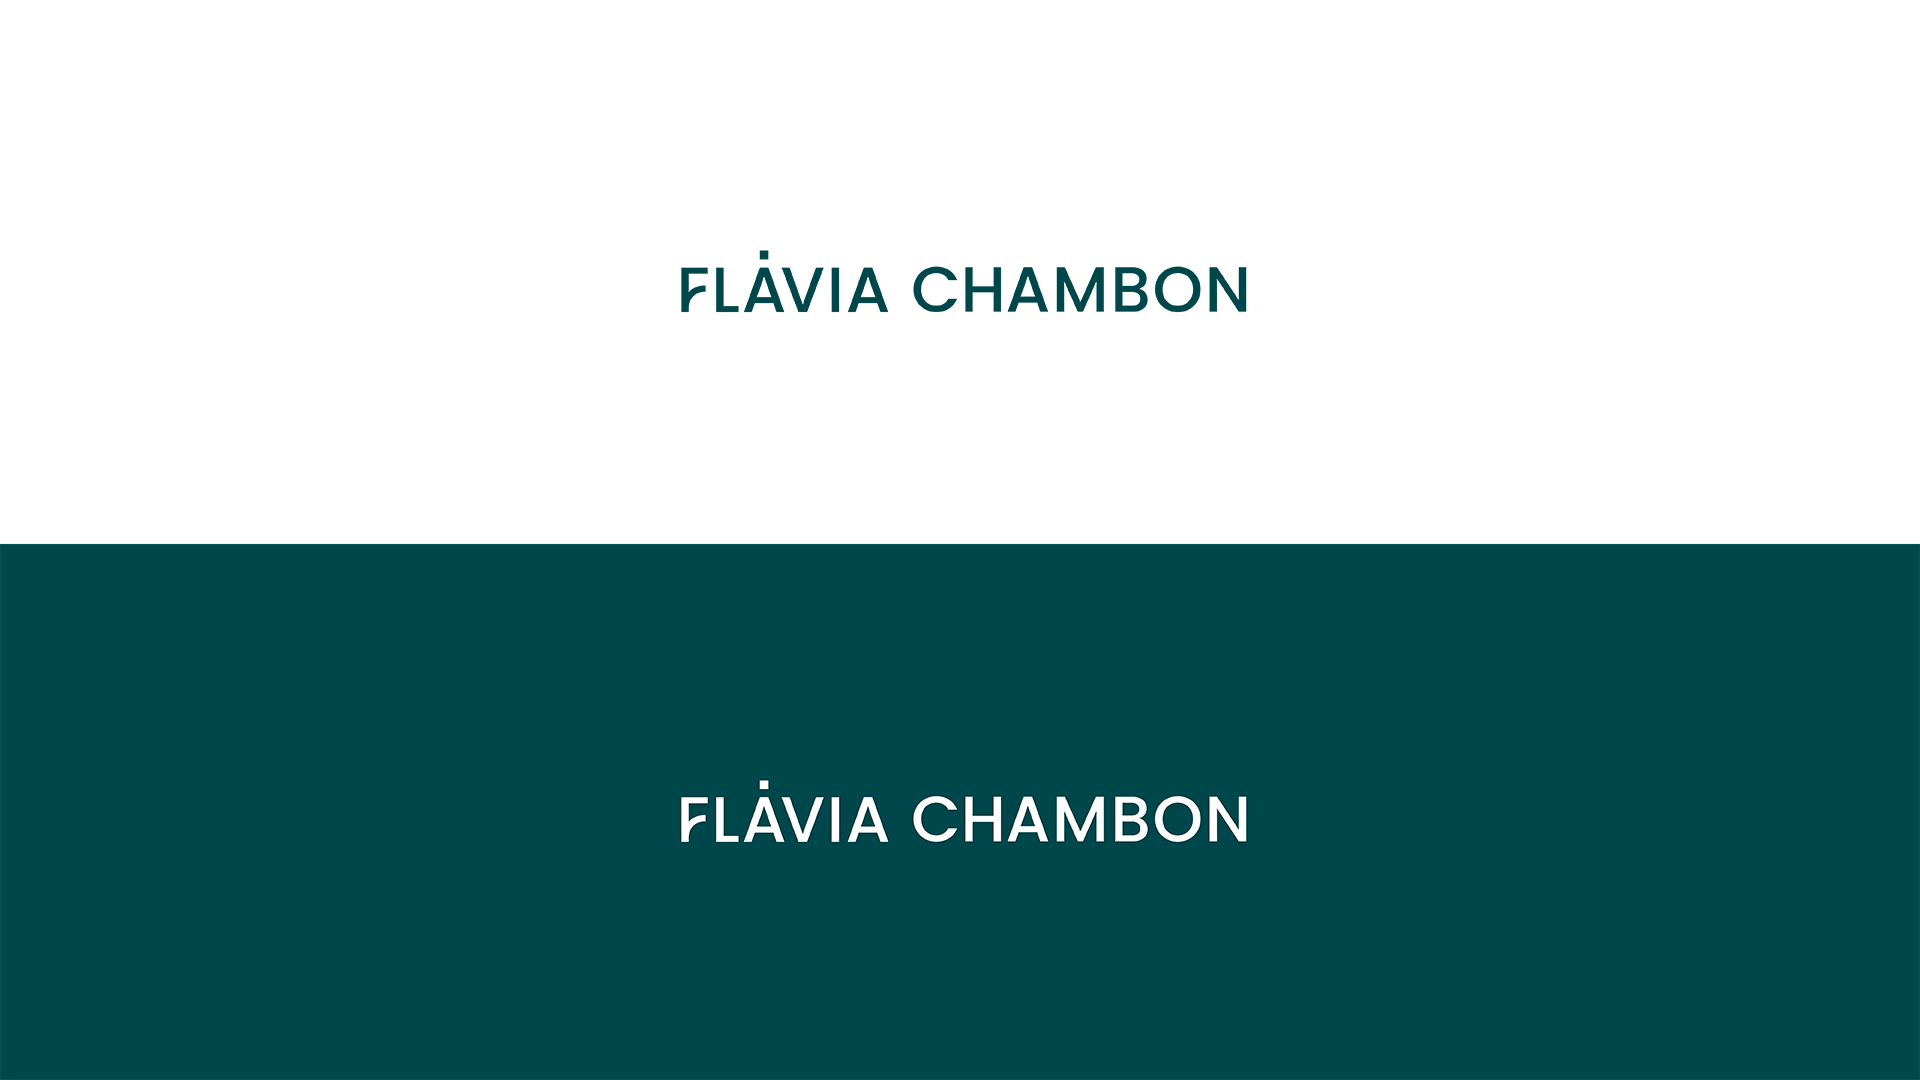 Apresentação_Flavia-Chambon_0425-copy